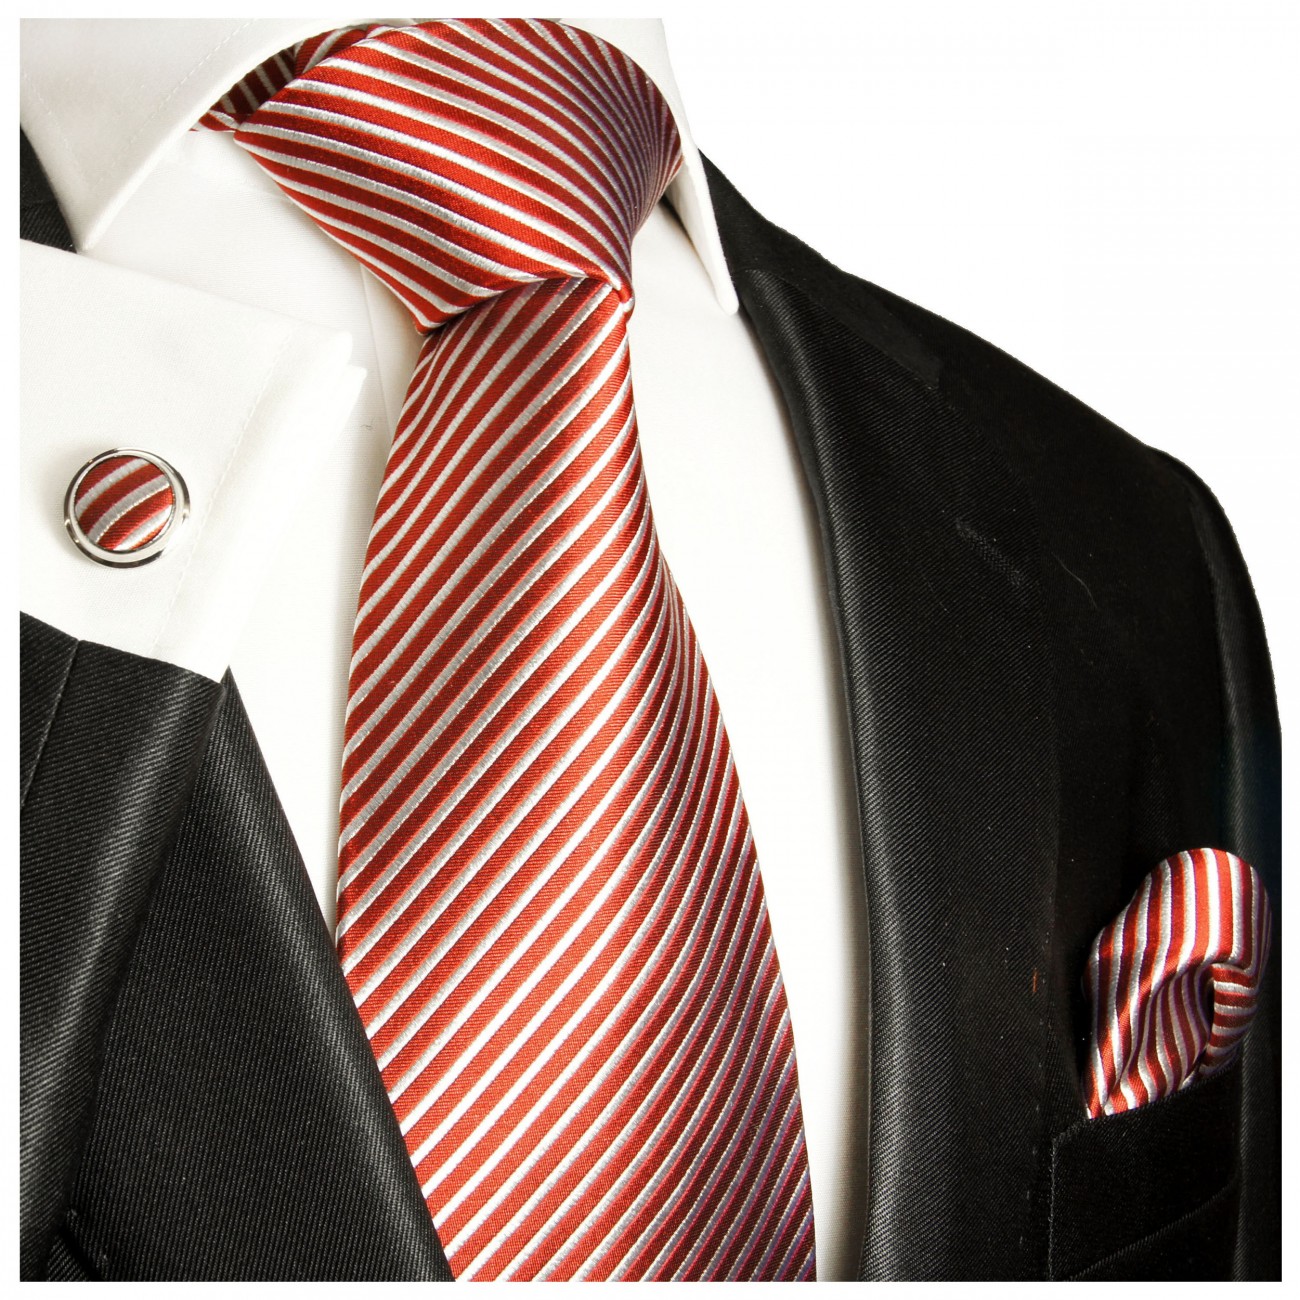 Krawatte rot weiß gestreift Seide mit Einstecktuch und Manschettenknöpfe